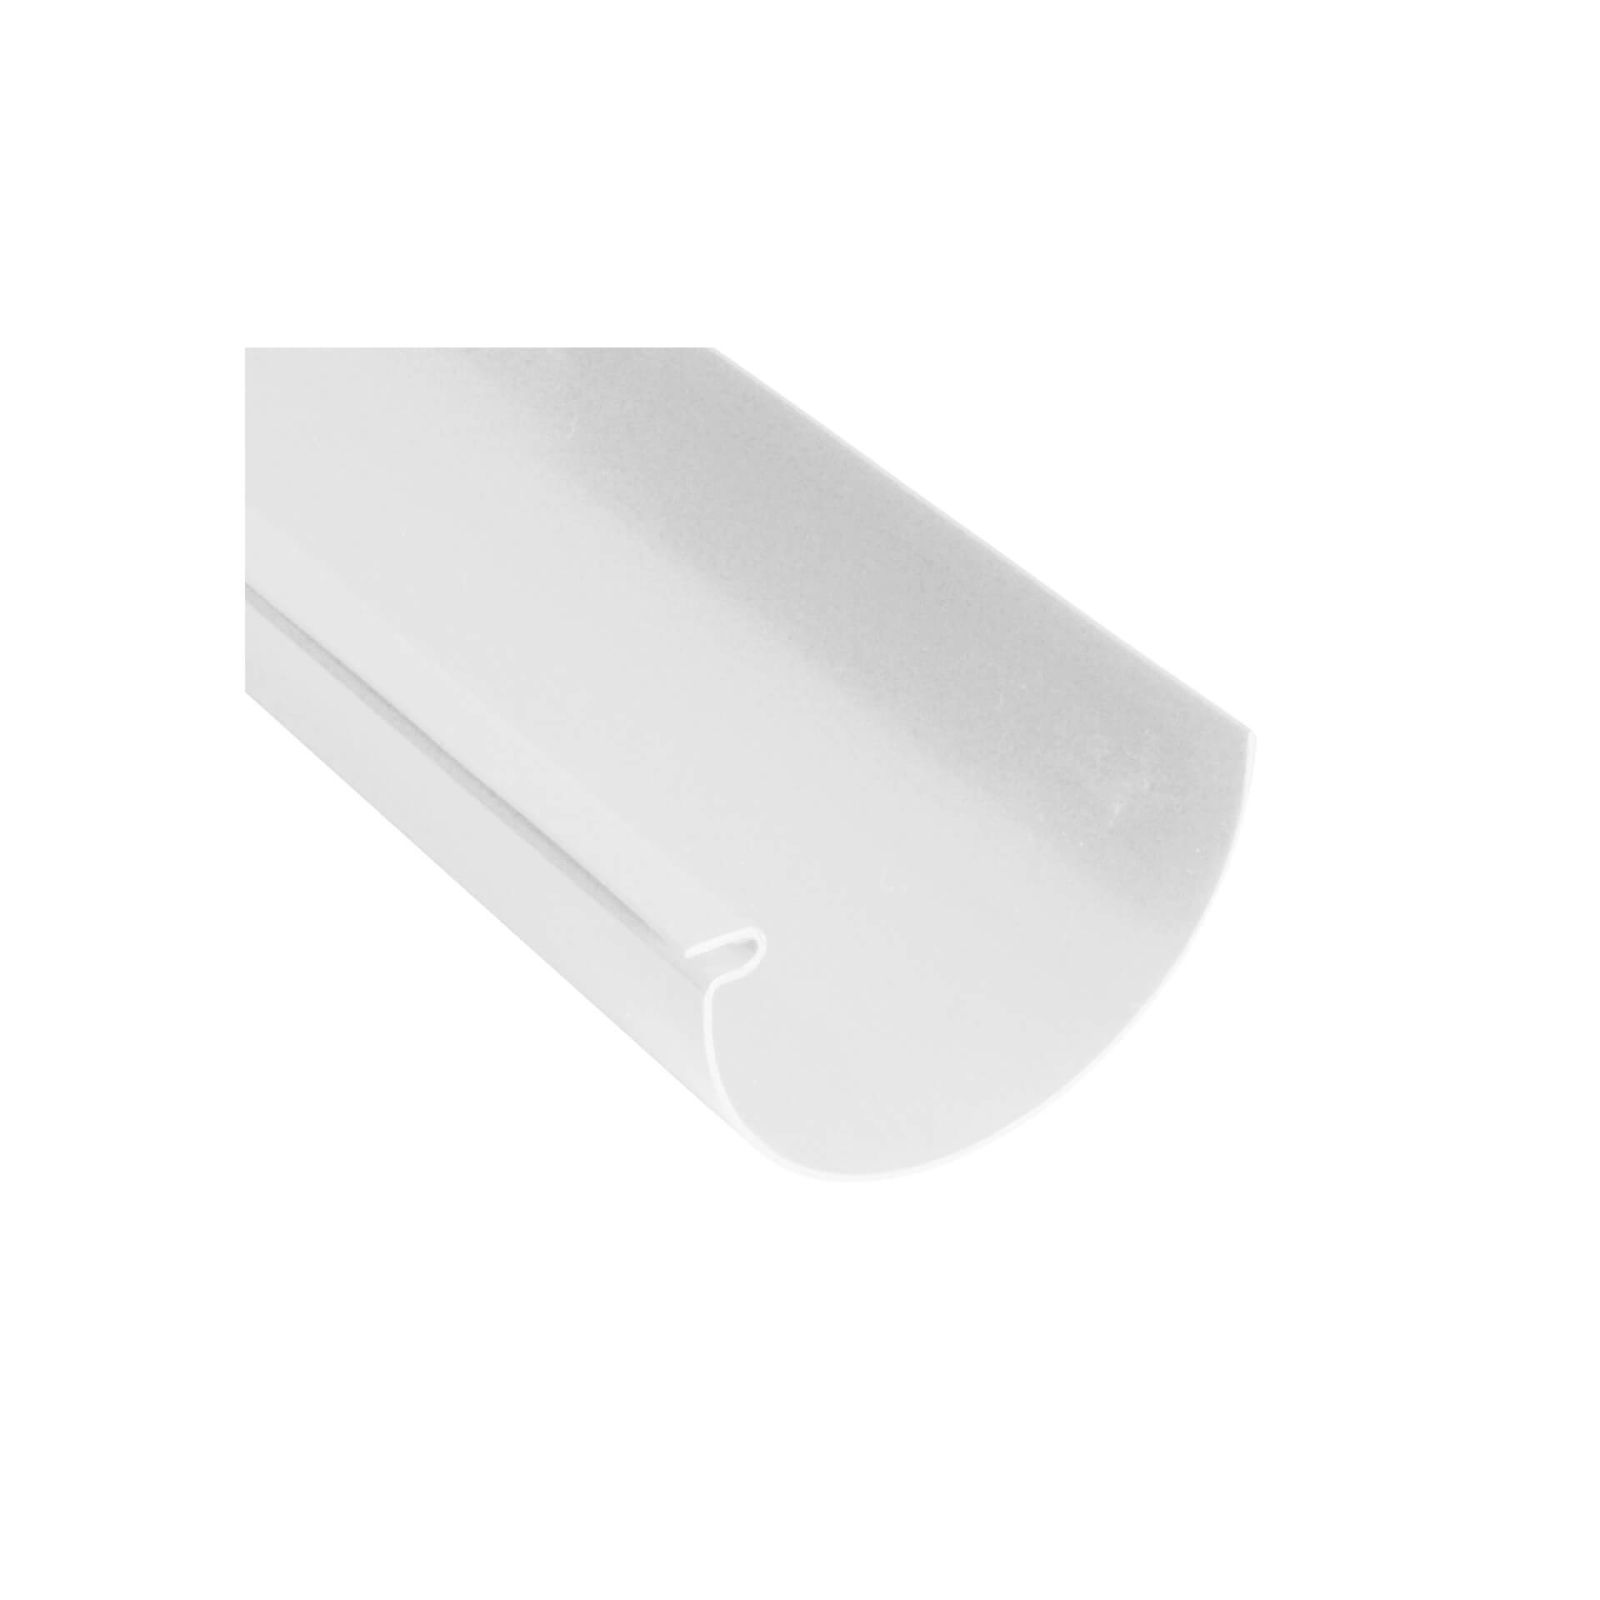 Kunststoff Dachrinnen Sparpaket 4 m | Ø 100/75 mm | Farbe Weiß